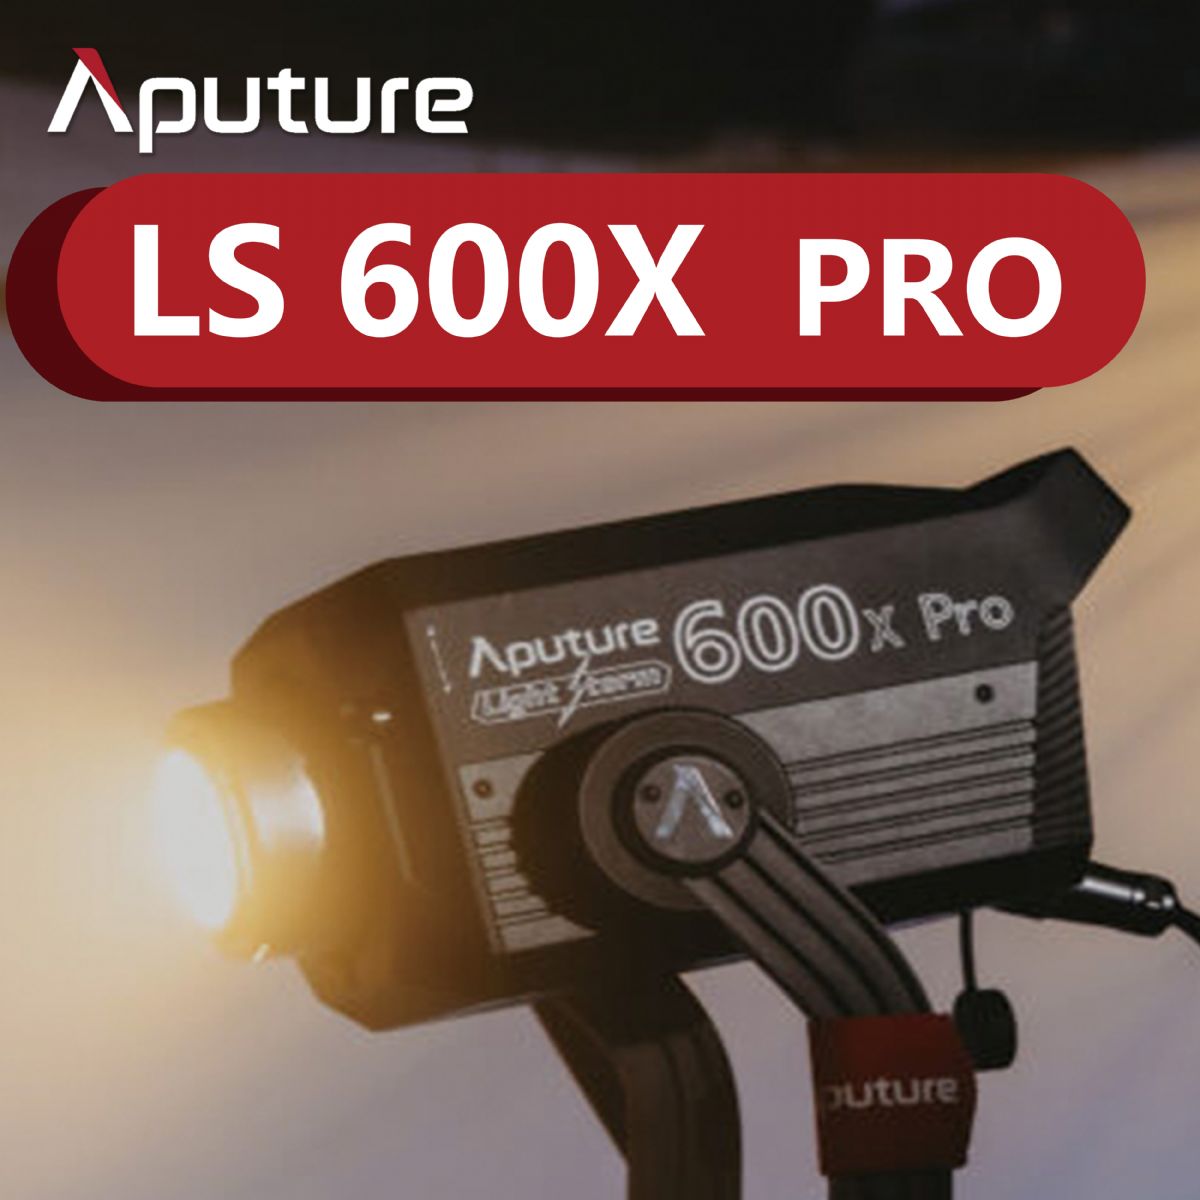 Aputure LS 600X PRO